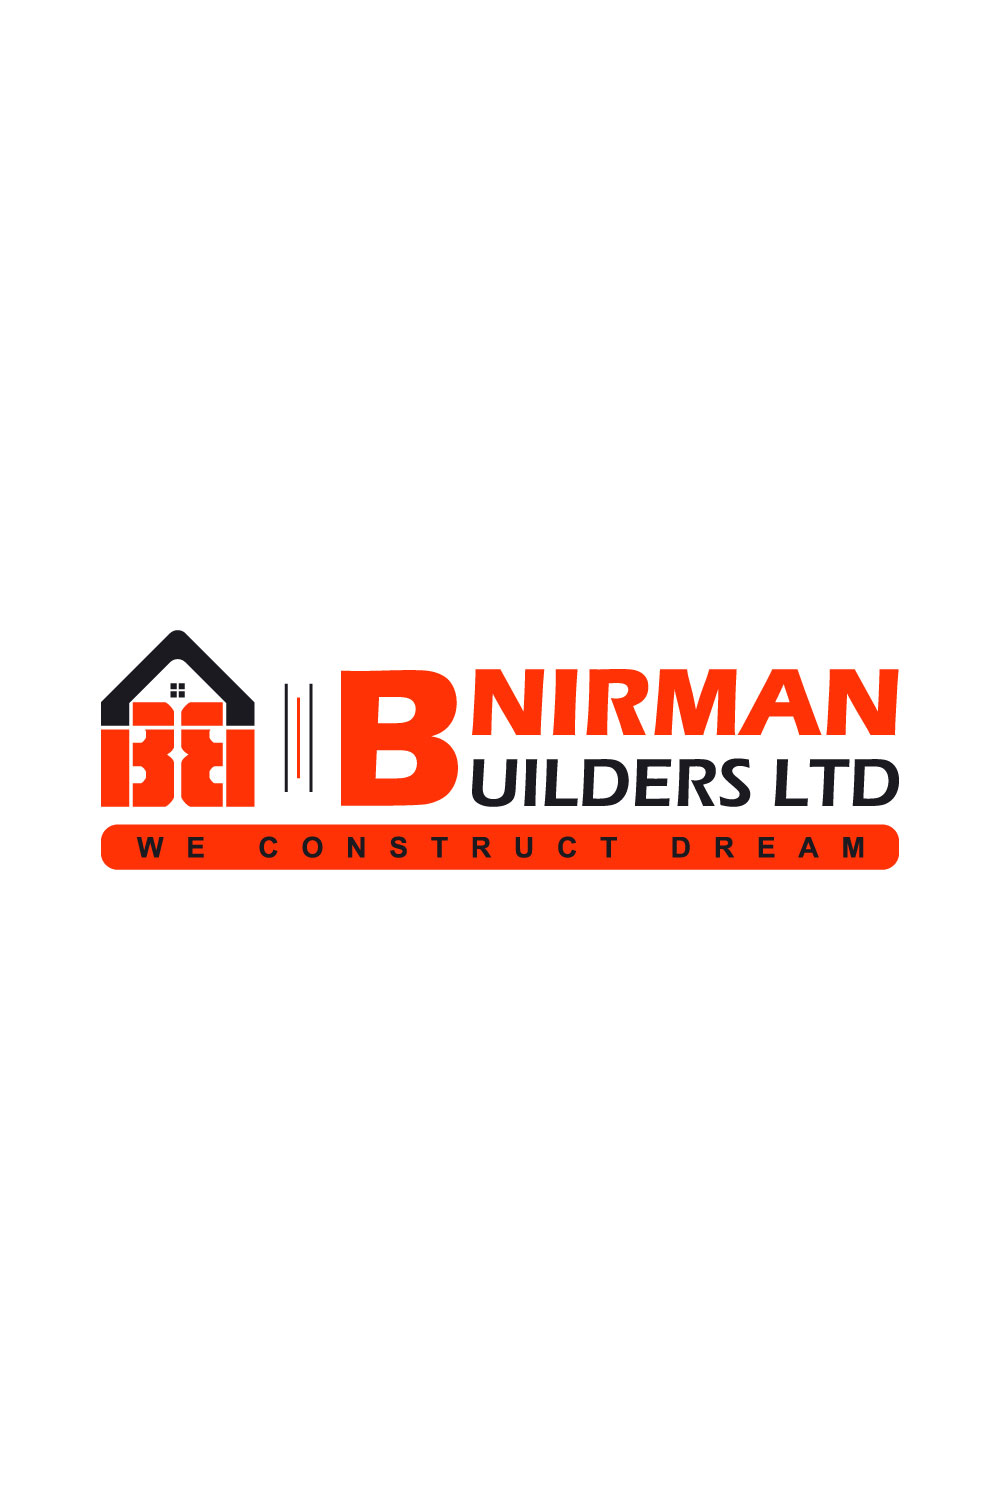 Bnirman Builders LTD Logo pinterest image.